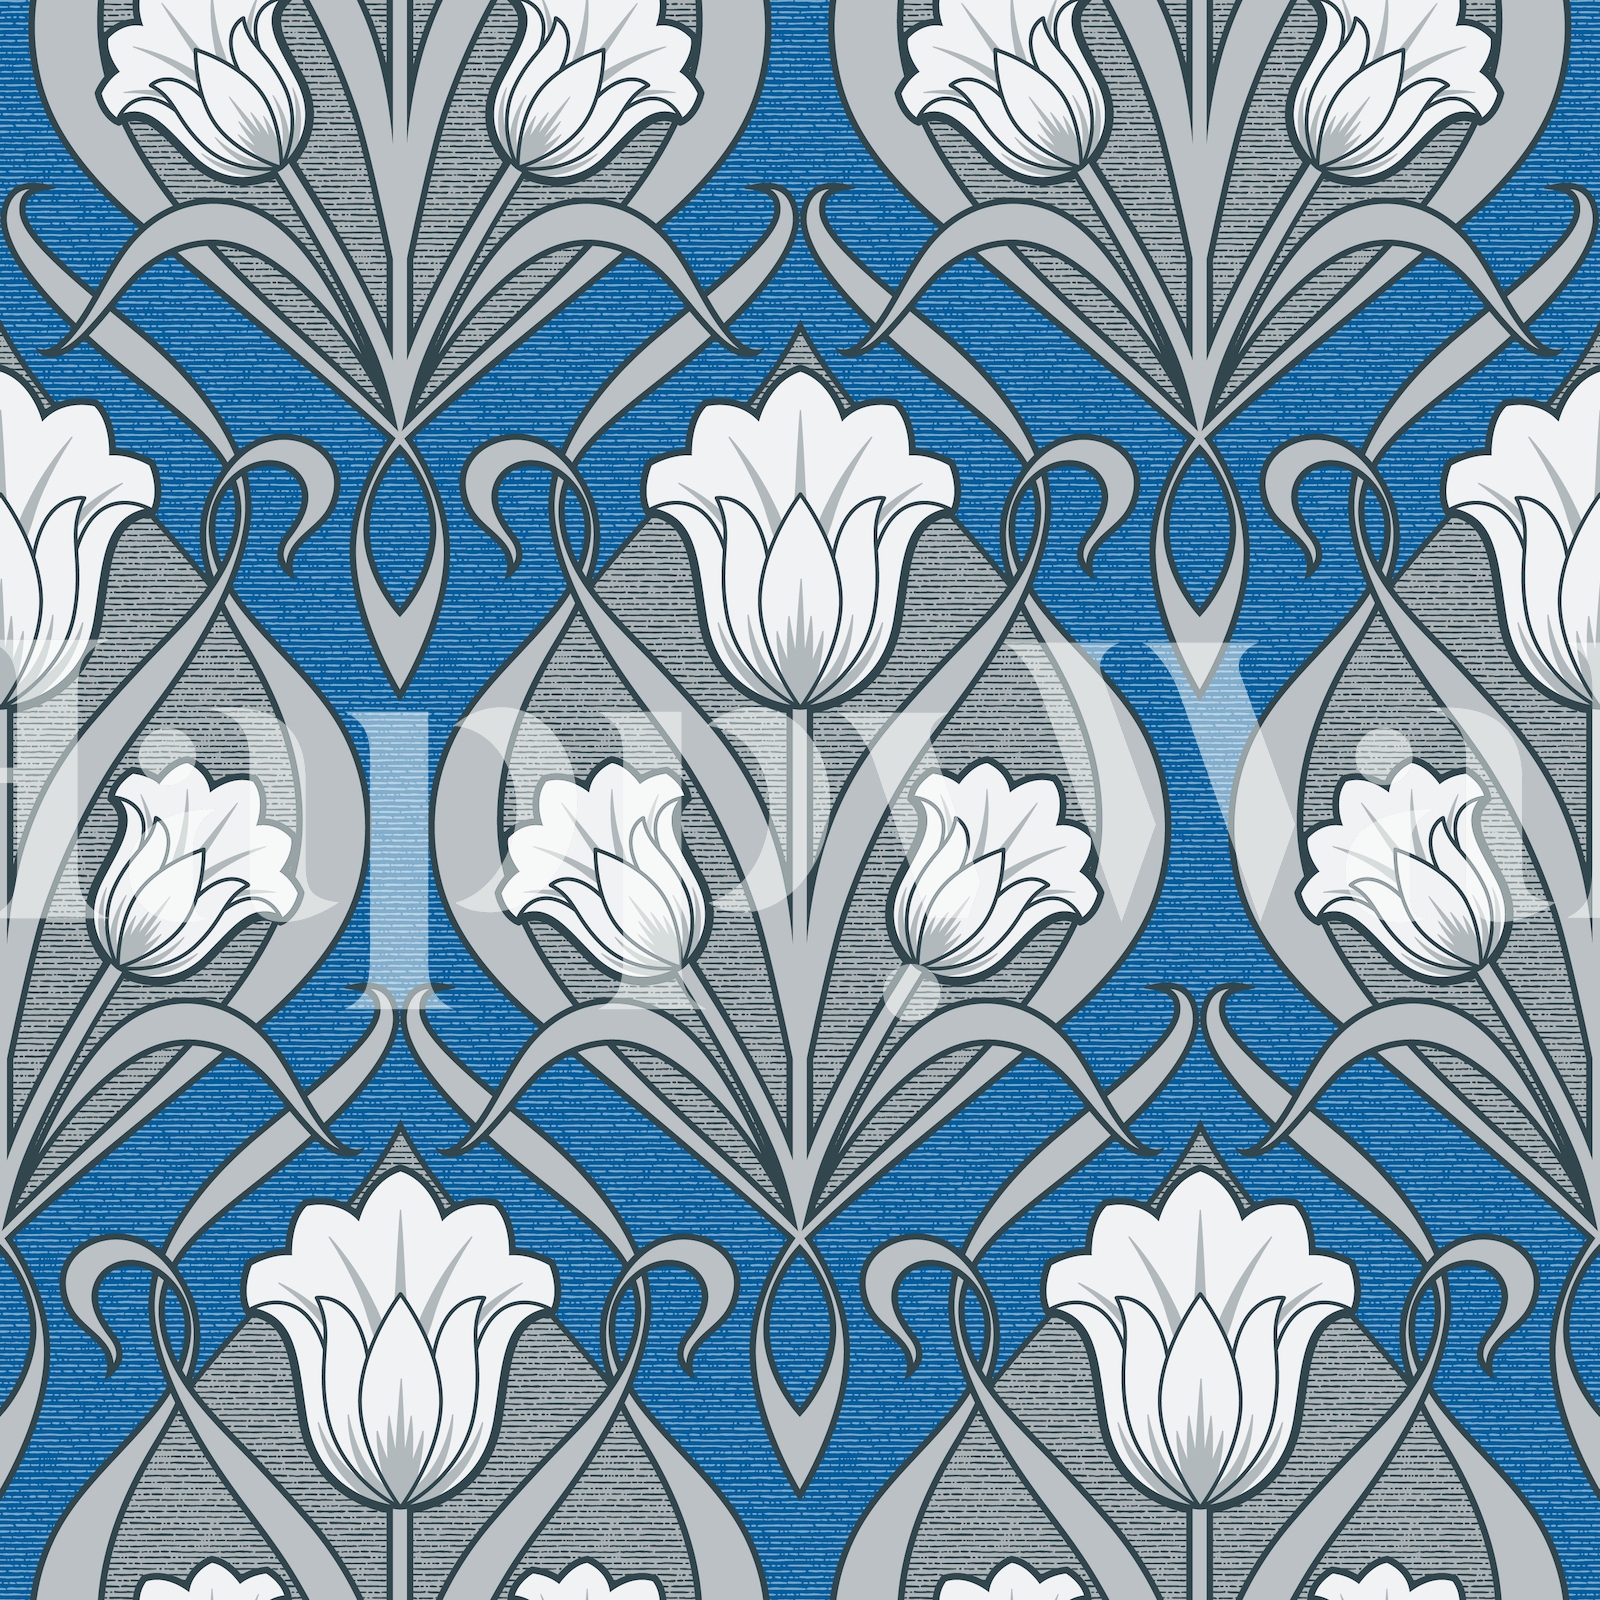 Tulips Art Nouveau - Charcoal and Persian Blue papel de parede